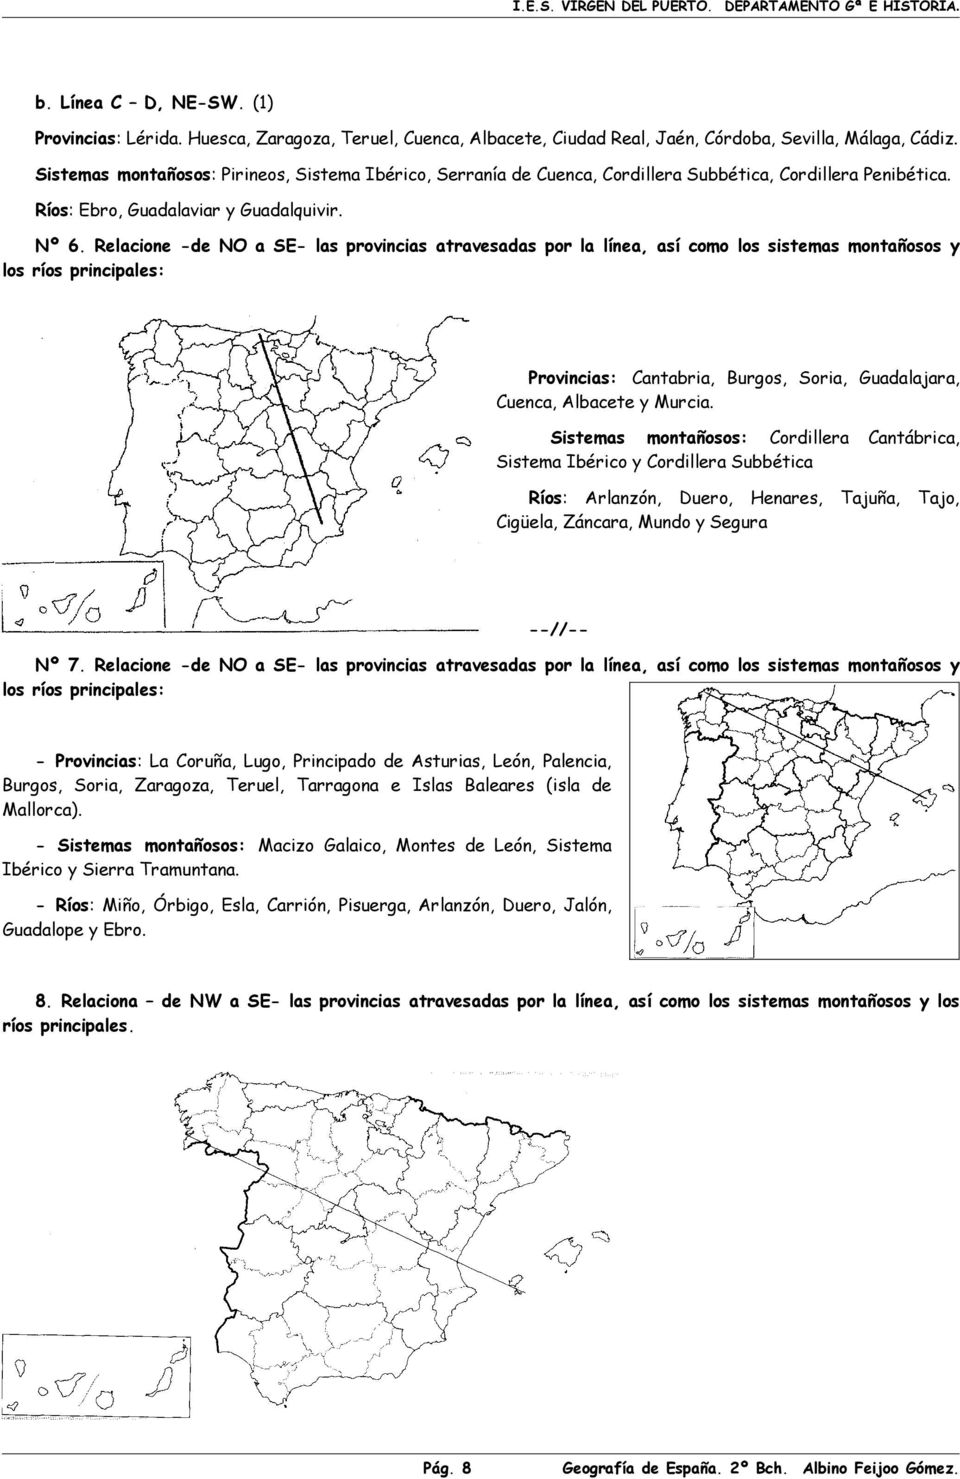 Relacione -de NO a SE- las provincias atravesadas por la línea, así como los sistemas montañosos y los ríos principales: Provincias: Cantabria, Burgos, Soria, Guadalajara, Cuenca, Albacete y Murcia.